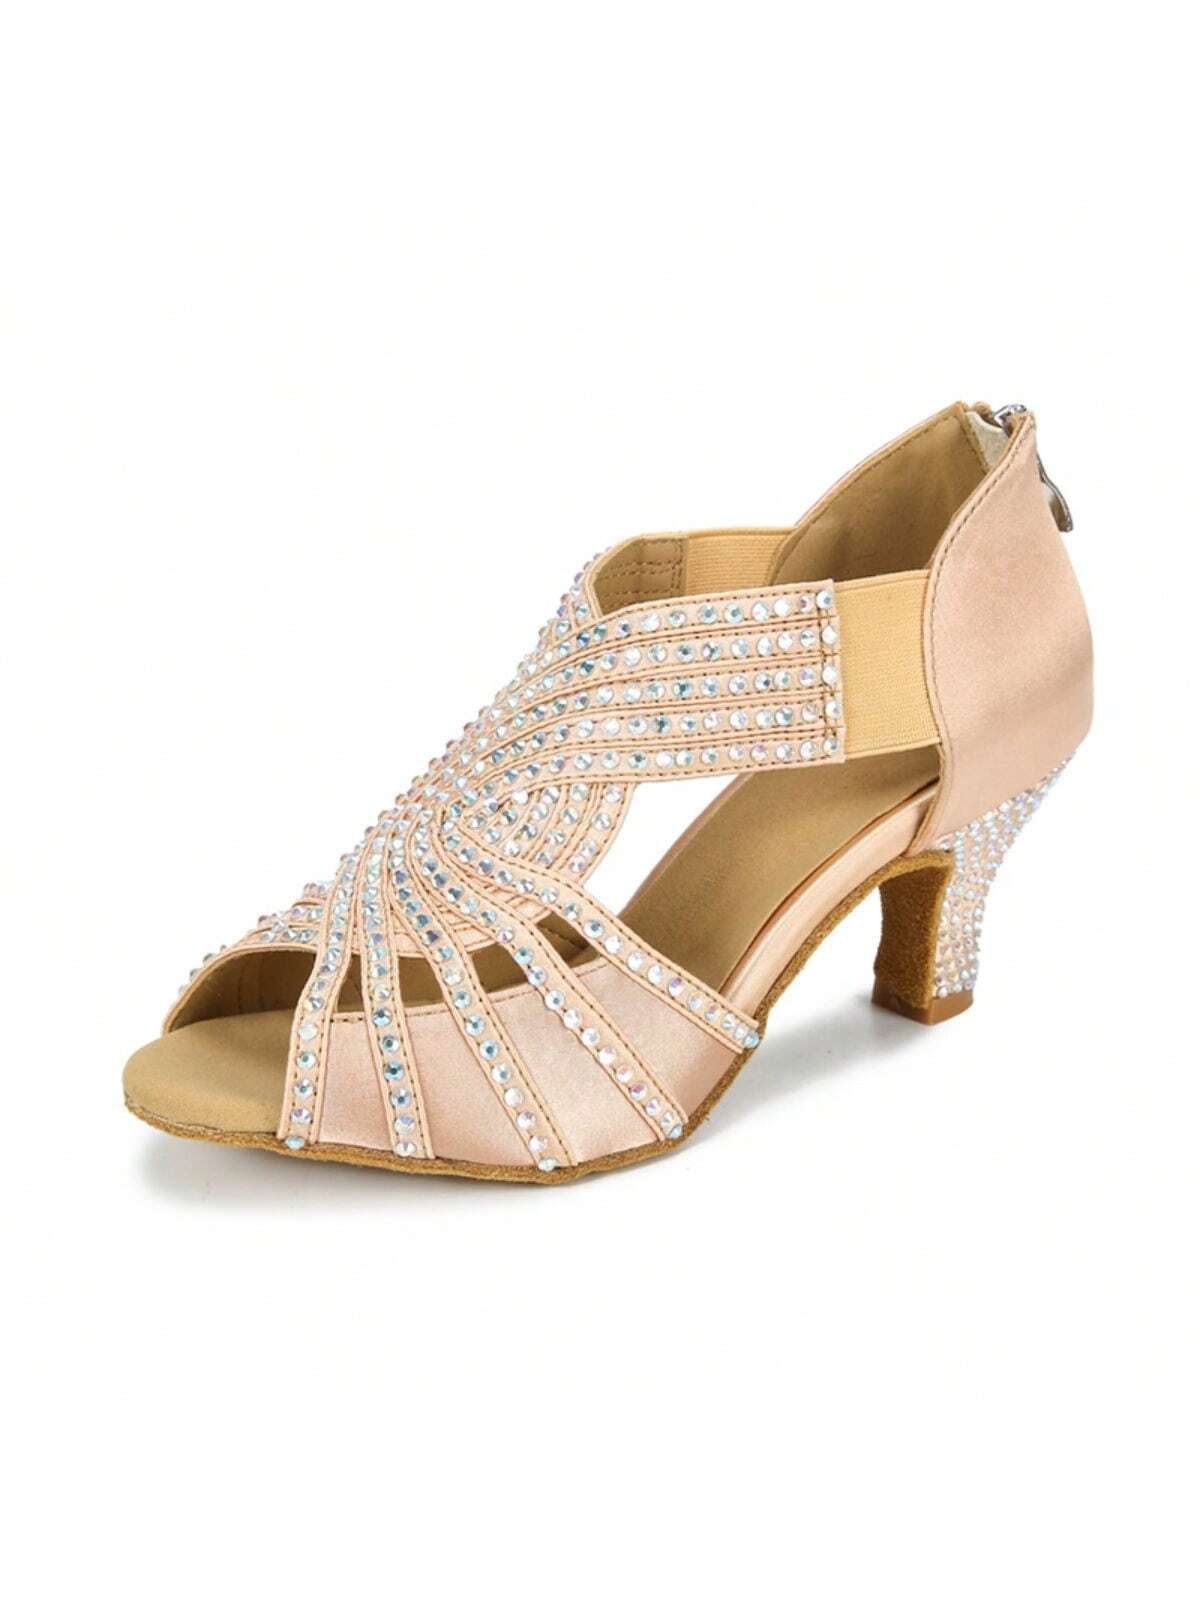 1 Pair Apricot Diamond-studded Satin Fashionable Comfortable Mid-heel Latin Dance Tango Dance Social Dance Shoes-Apricot-1